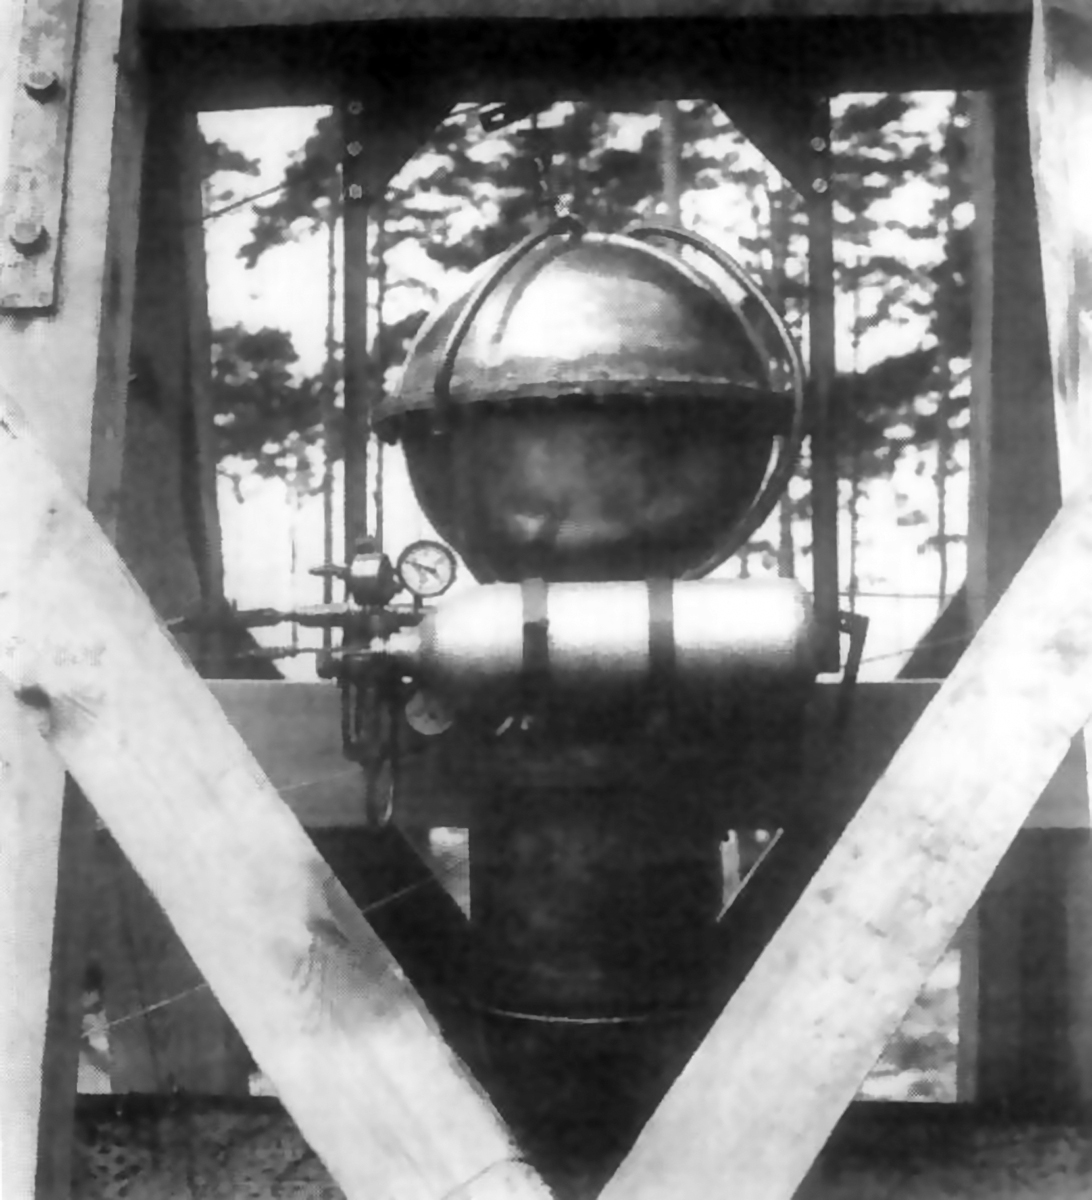 Aufnahme von l934 eines Raketentriebwerks, das Arthur Rudolph für das Aggregat 1 in der Heeresversuchsanstalt in Kummersdorf entwickelt hatte. Bild: Deutsches Museum, München